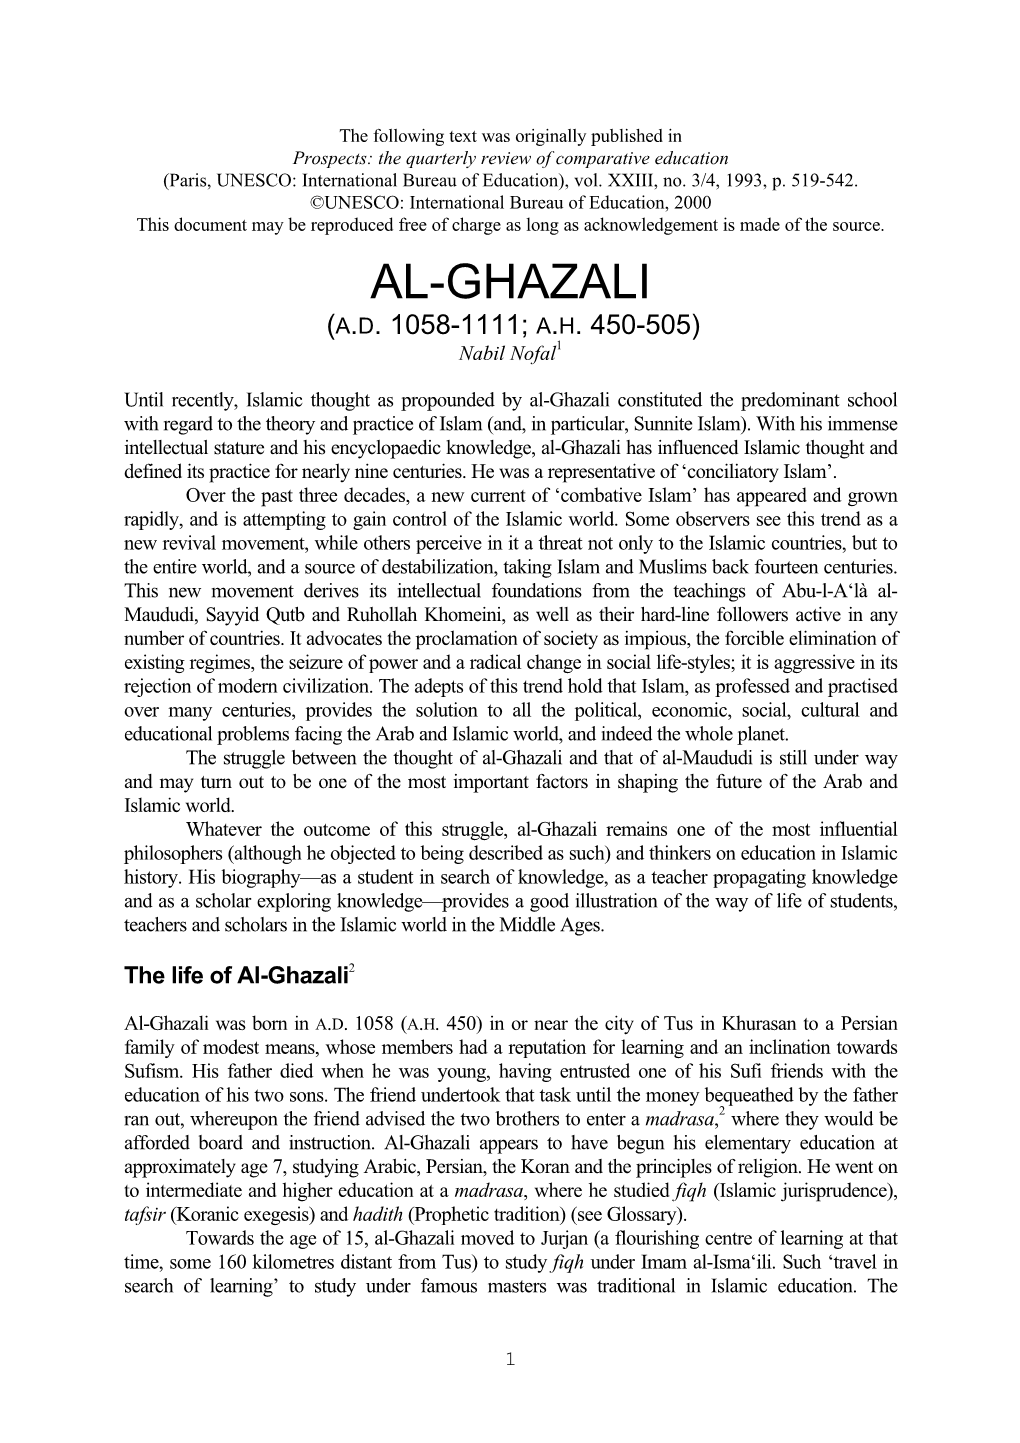 Al-Ghazali (A.D